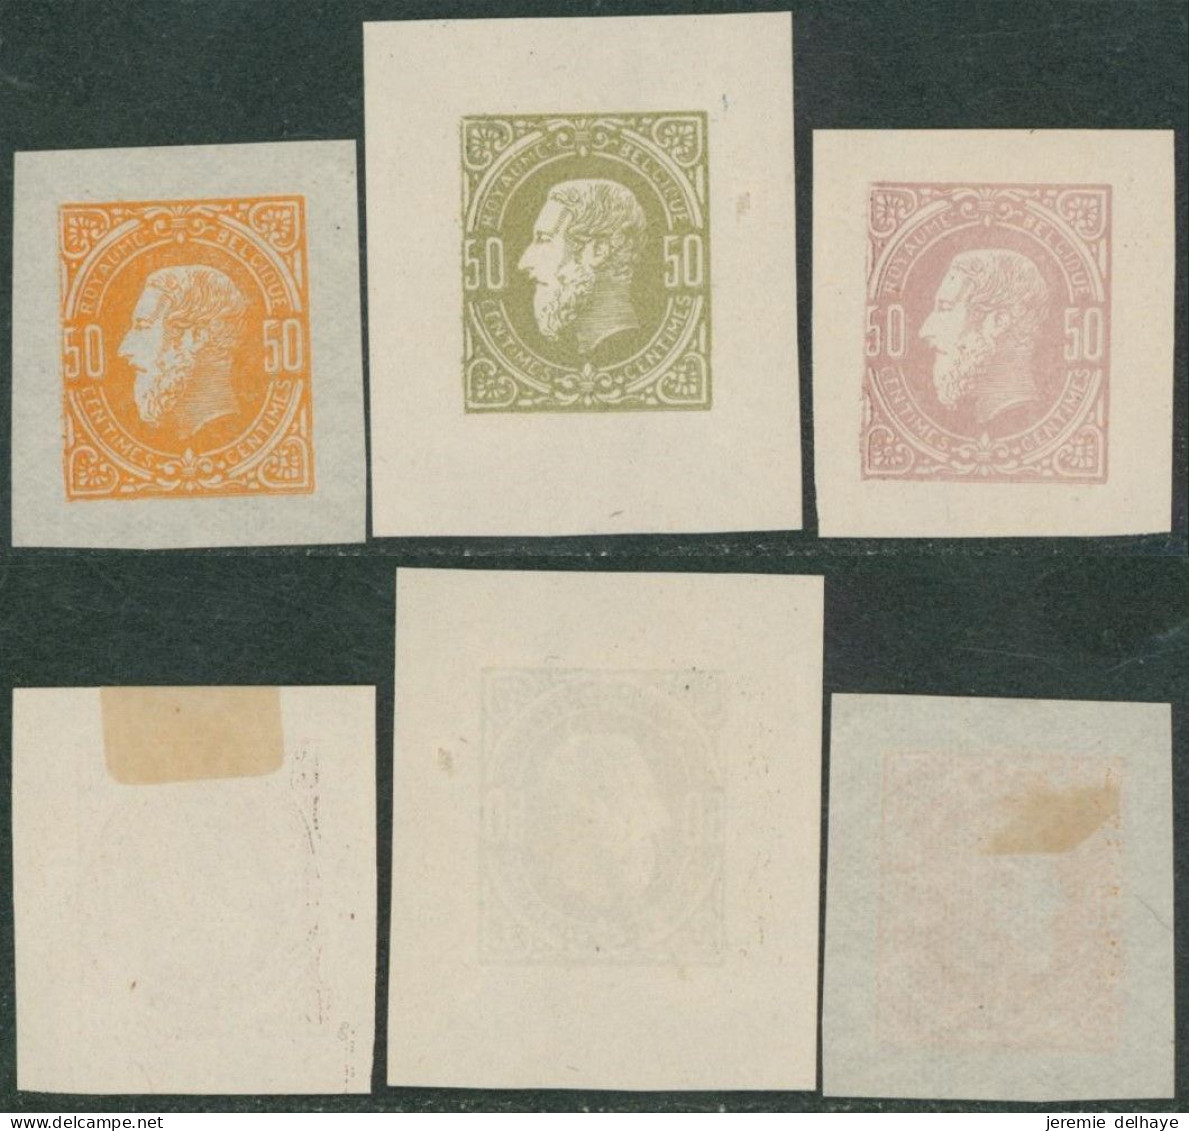 Réimpression De La Planche (émission 1869) Sur Papier Blanc 50C (sans Mot ESSAI Au Verso) En 3 Coloris. - Proofs & Reprints